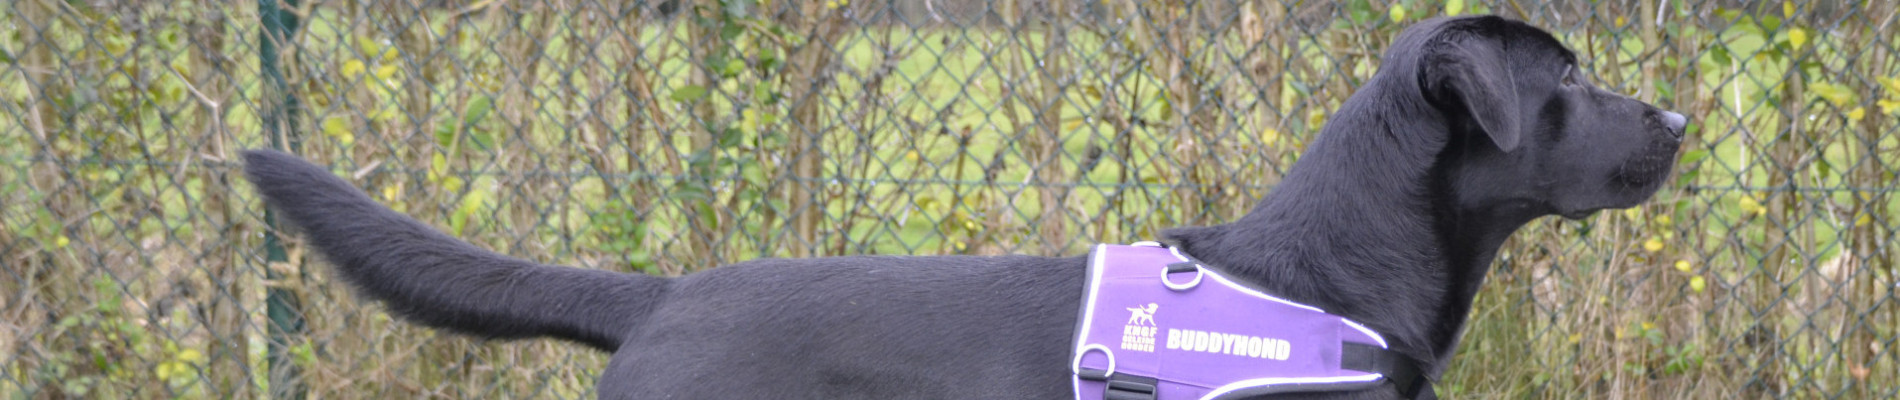 Zwarte labrador met paars buddyhondenhesje voor een heg